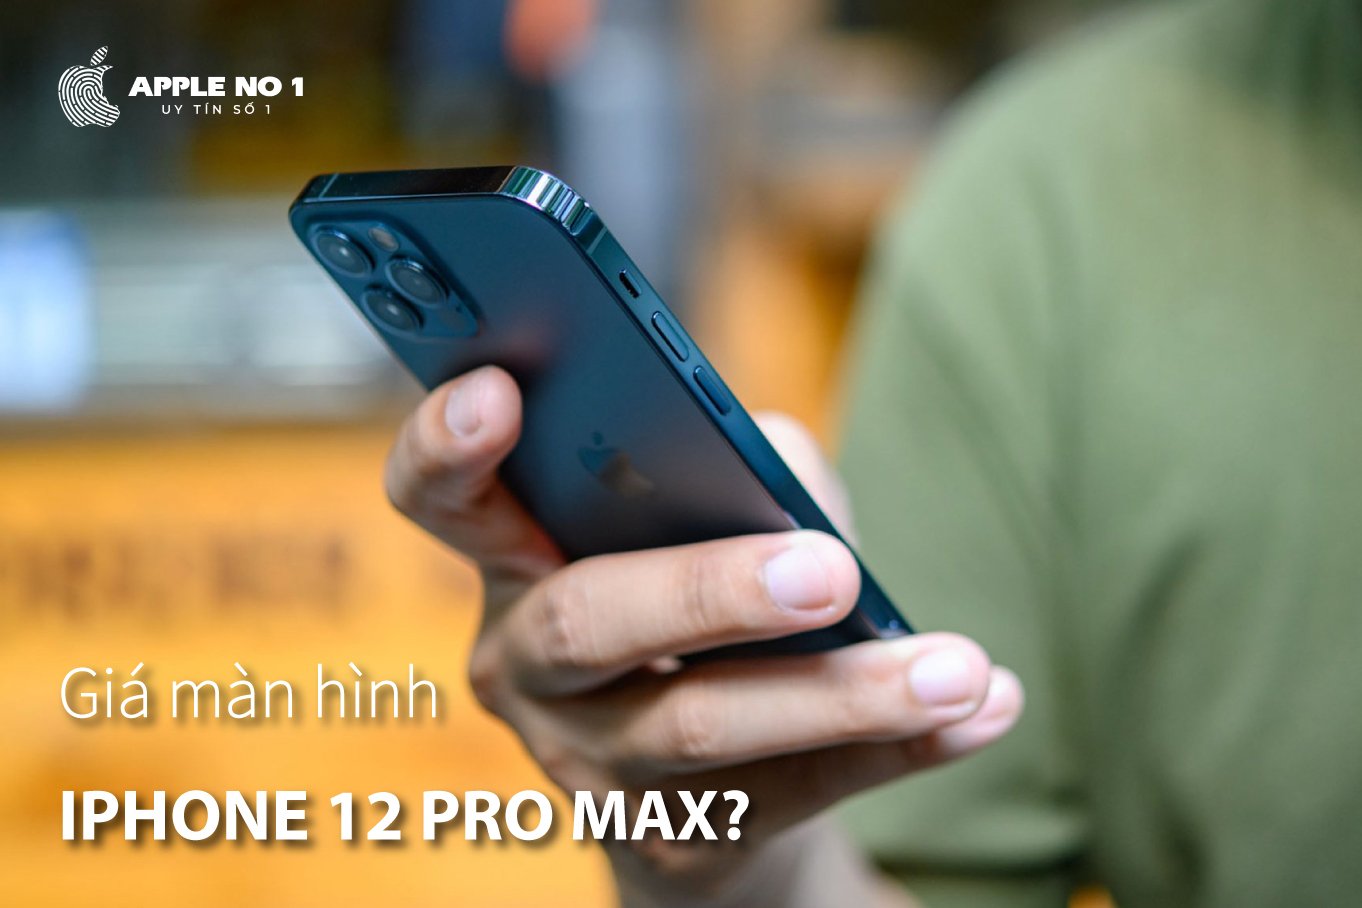 gia man hinh iphone 12 pro max Ha Noi?